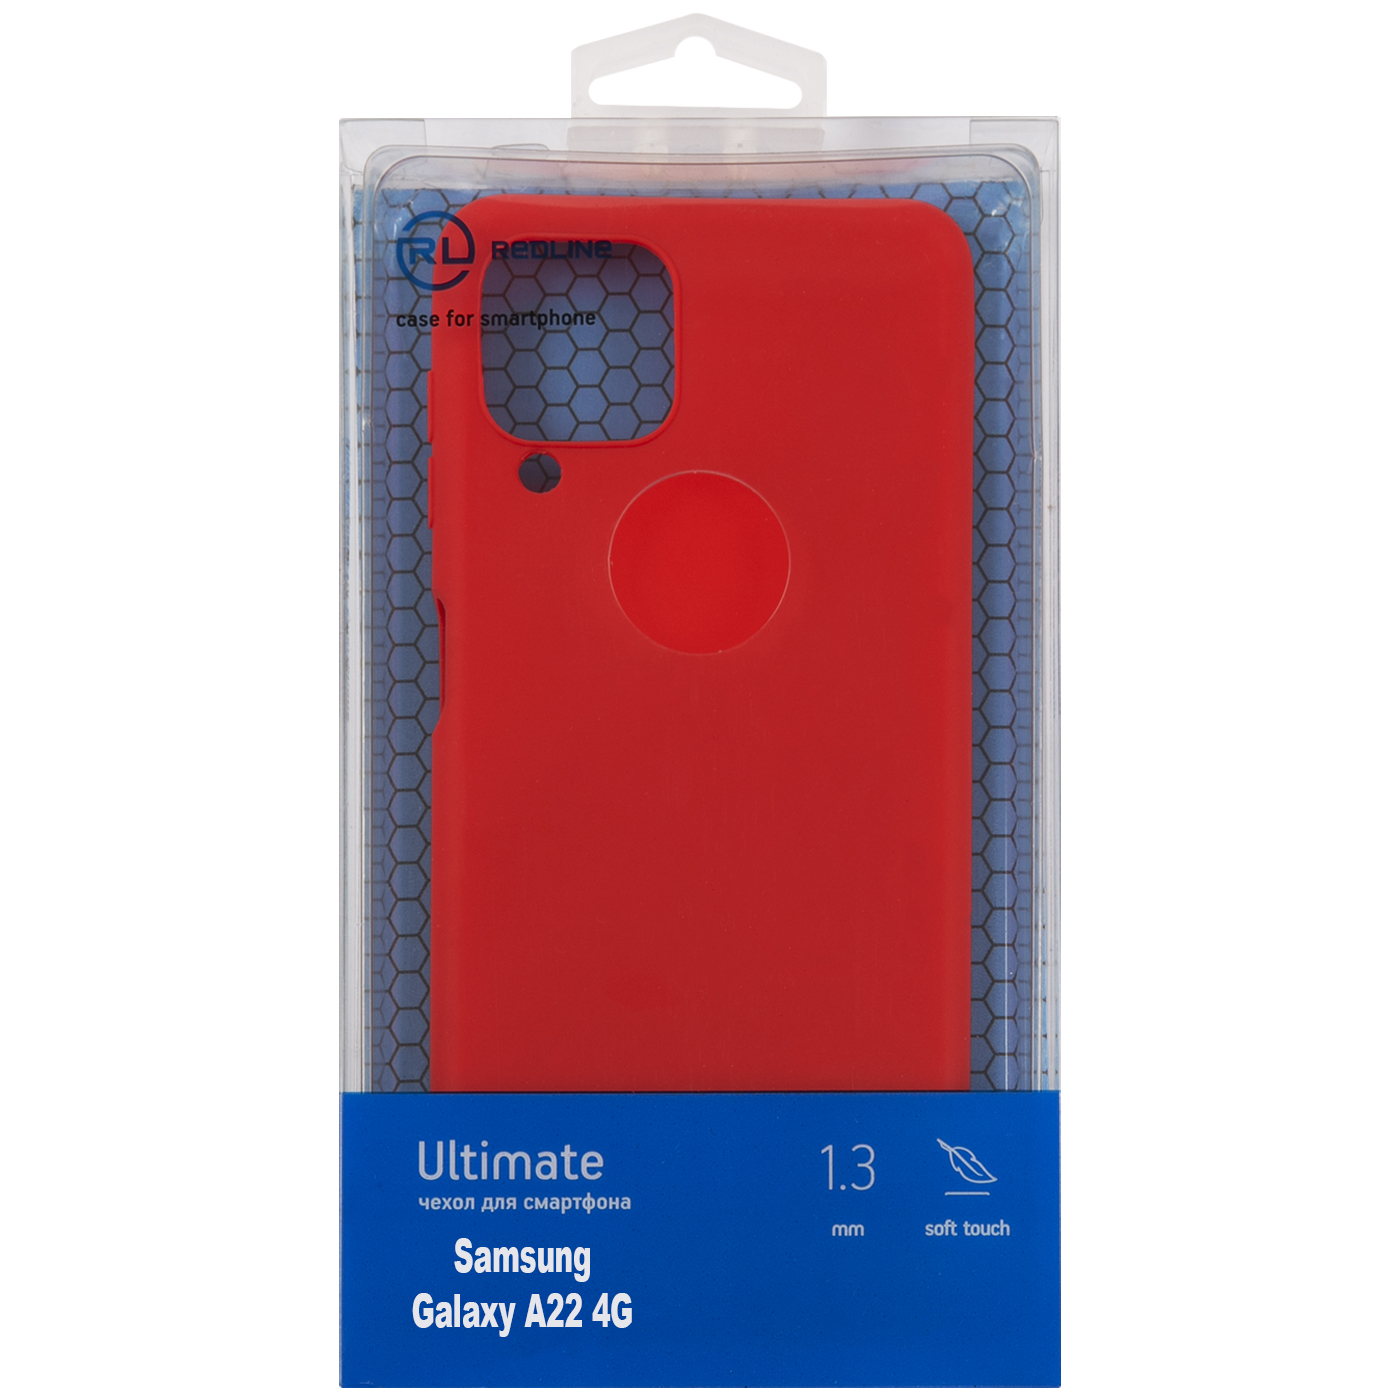 Чехол защитный Red Line Ultimate для Samsung Galaxy A22 4G, красный УТ000025031 чехол red line для samsung galaxy a22 4g прозрачный